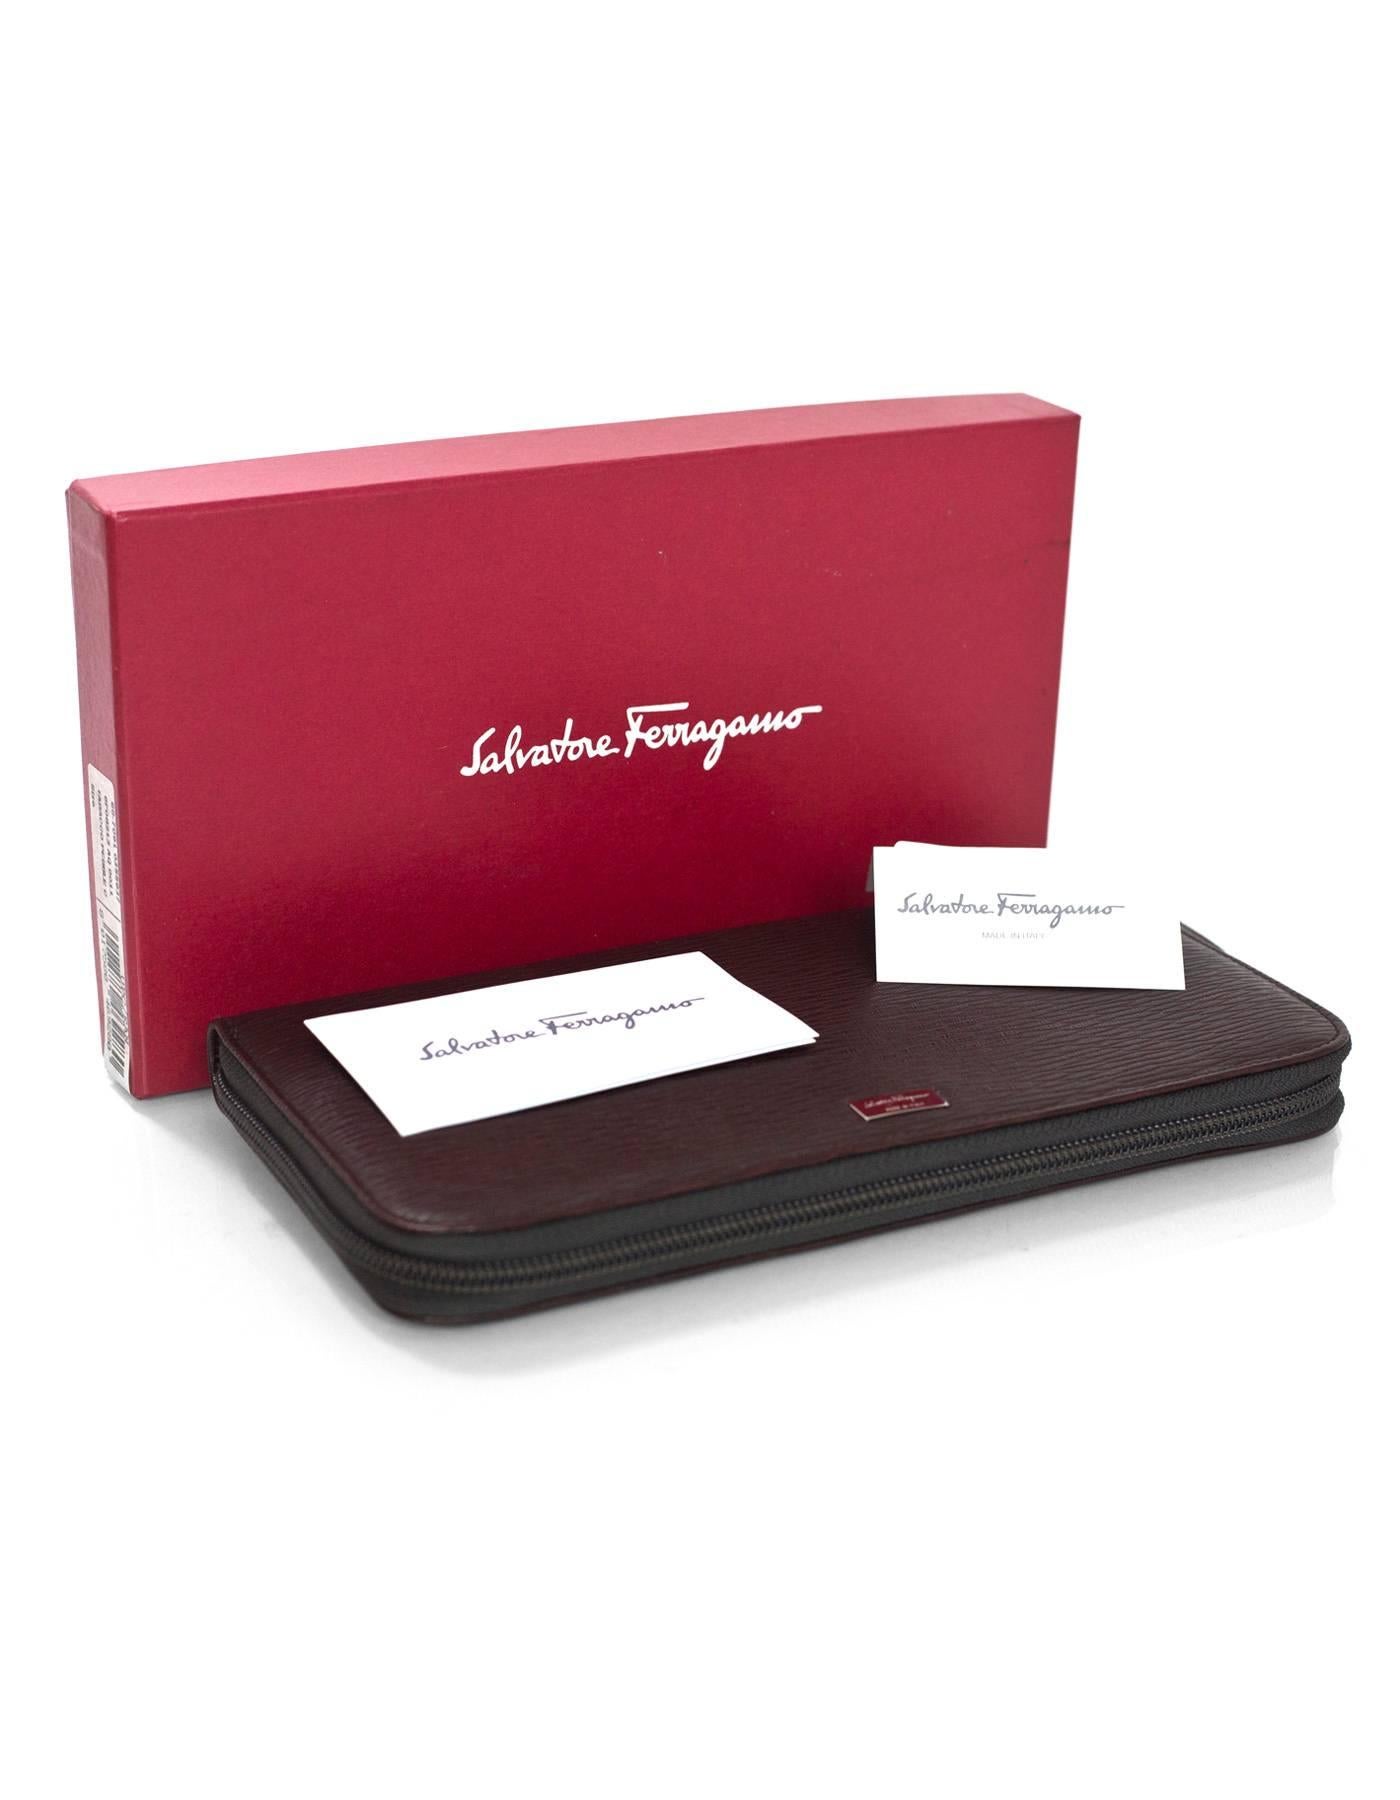 Salvatore Ferragamo Brown Leather Zip Around Large Travel Wallet rt. $390 3